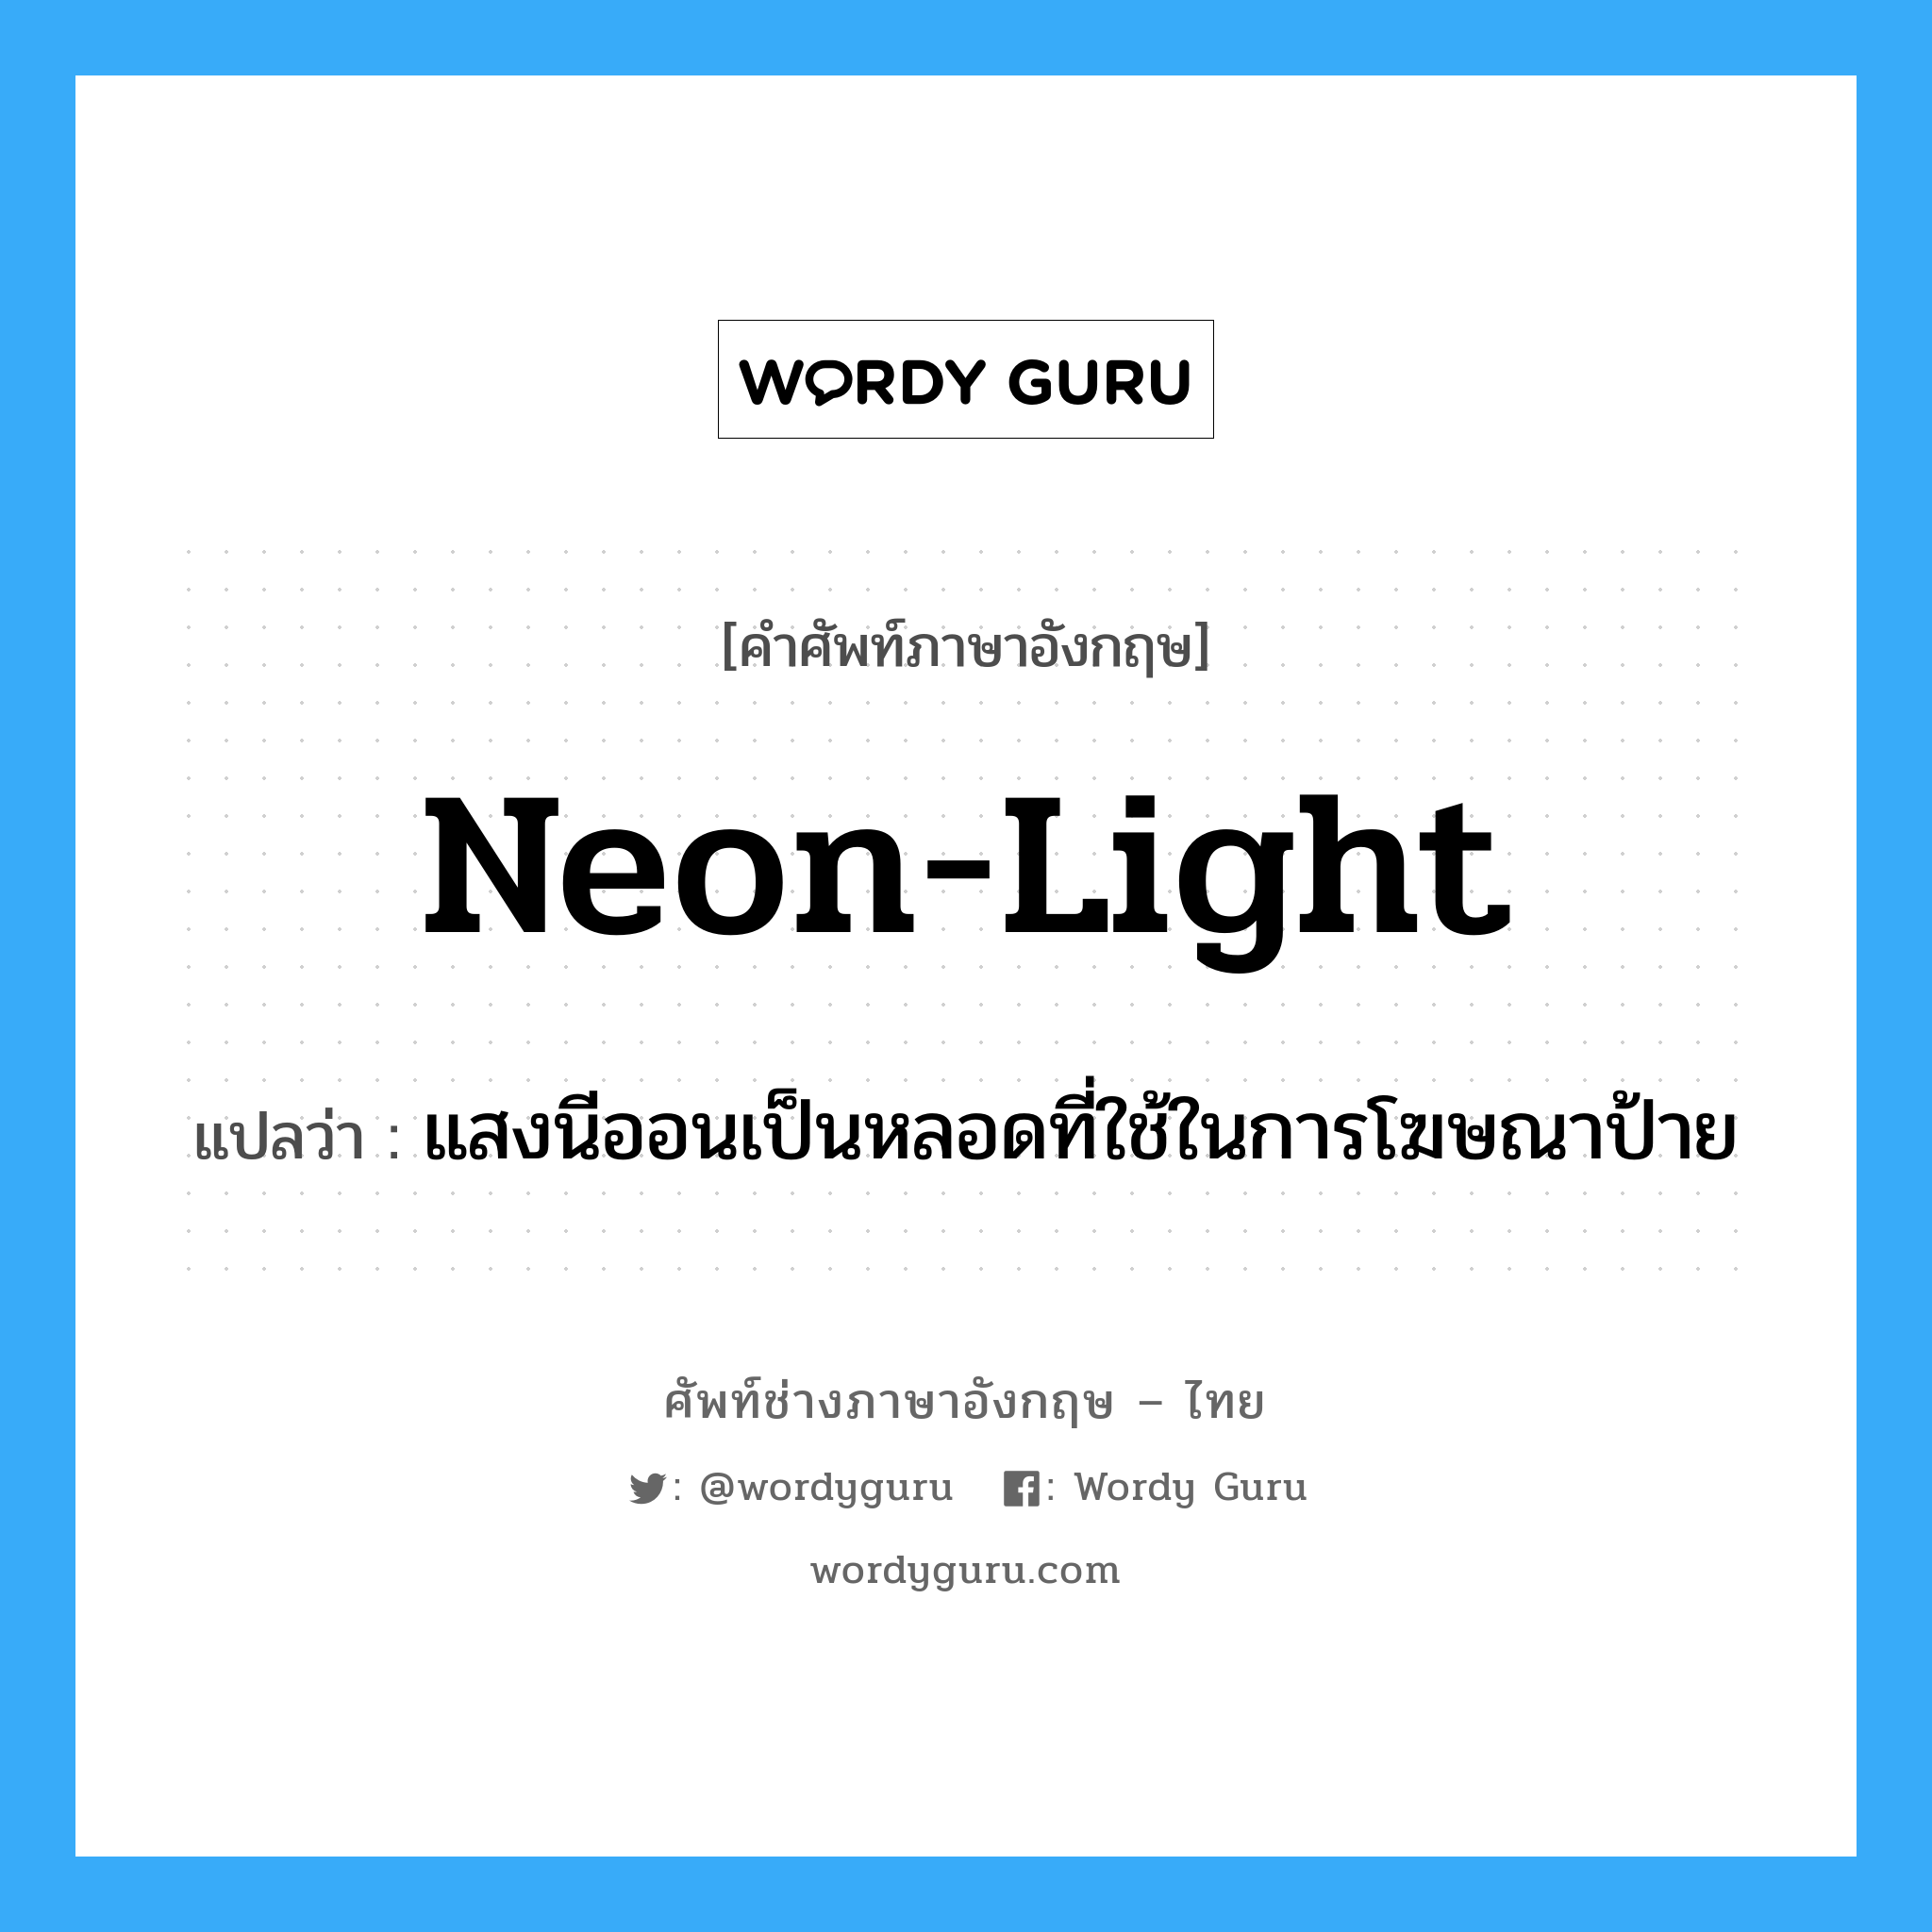 แสงนีออนเป็นหลอดที่ใช้ในการโฆษณาป้าย ภาษาอังกฤษ?, คำศัพท์ช่างภาษาอังกฤษ - ไทย แสงนีออนเป็นหลอดที่ใช้ในการโฆษณาป้าย คำศัพท์ภาษาอังกฤษ แสงนีออนเป็นหลอดที่ใช้ในการโฆษณาป้าย แปลว่า neon-light